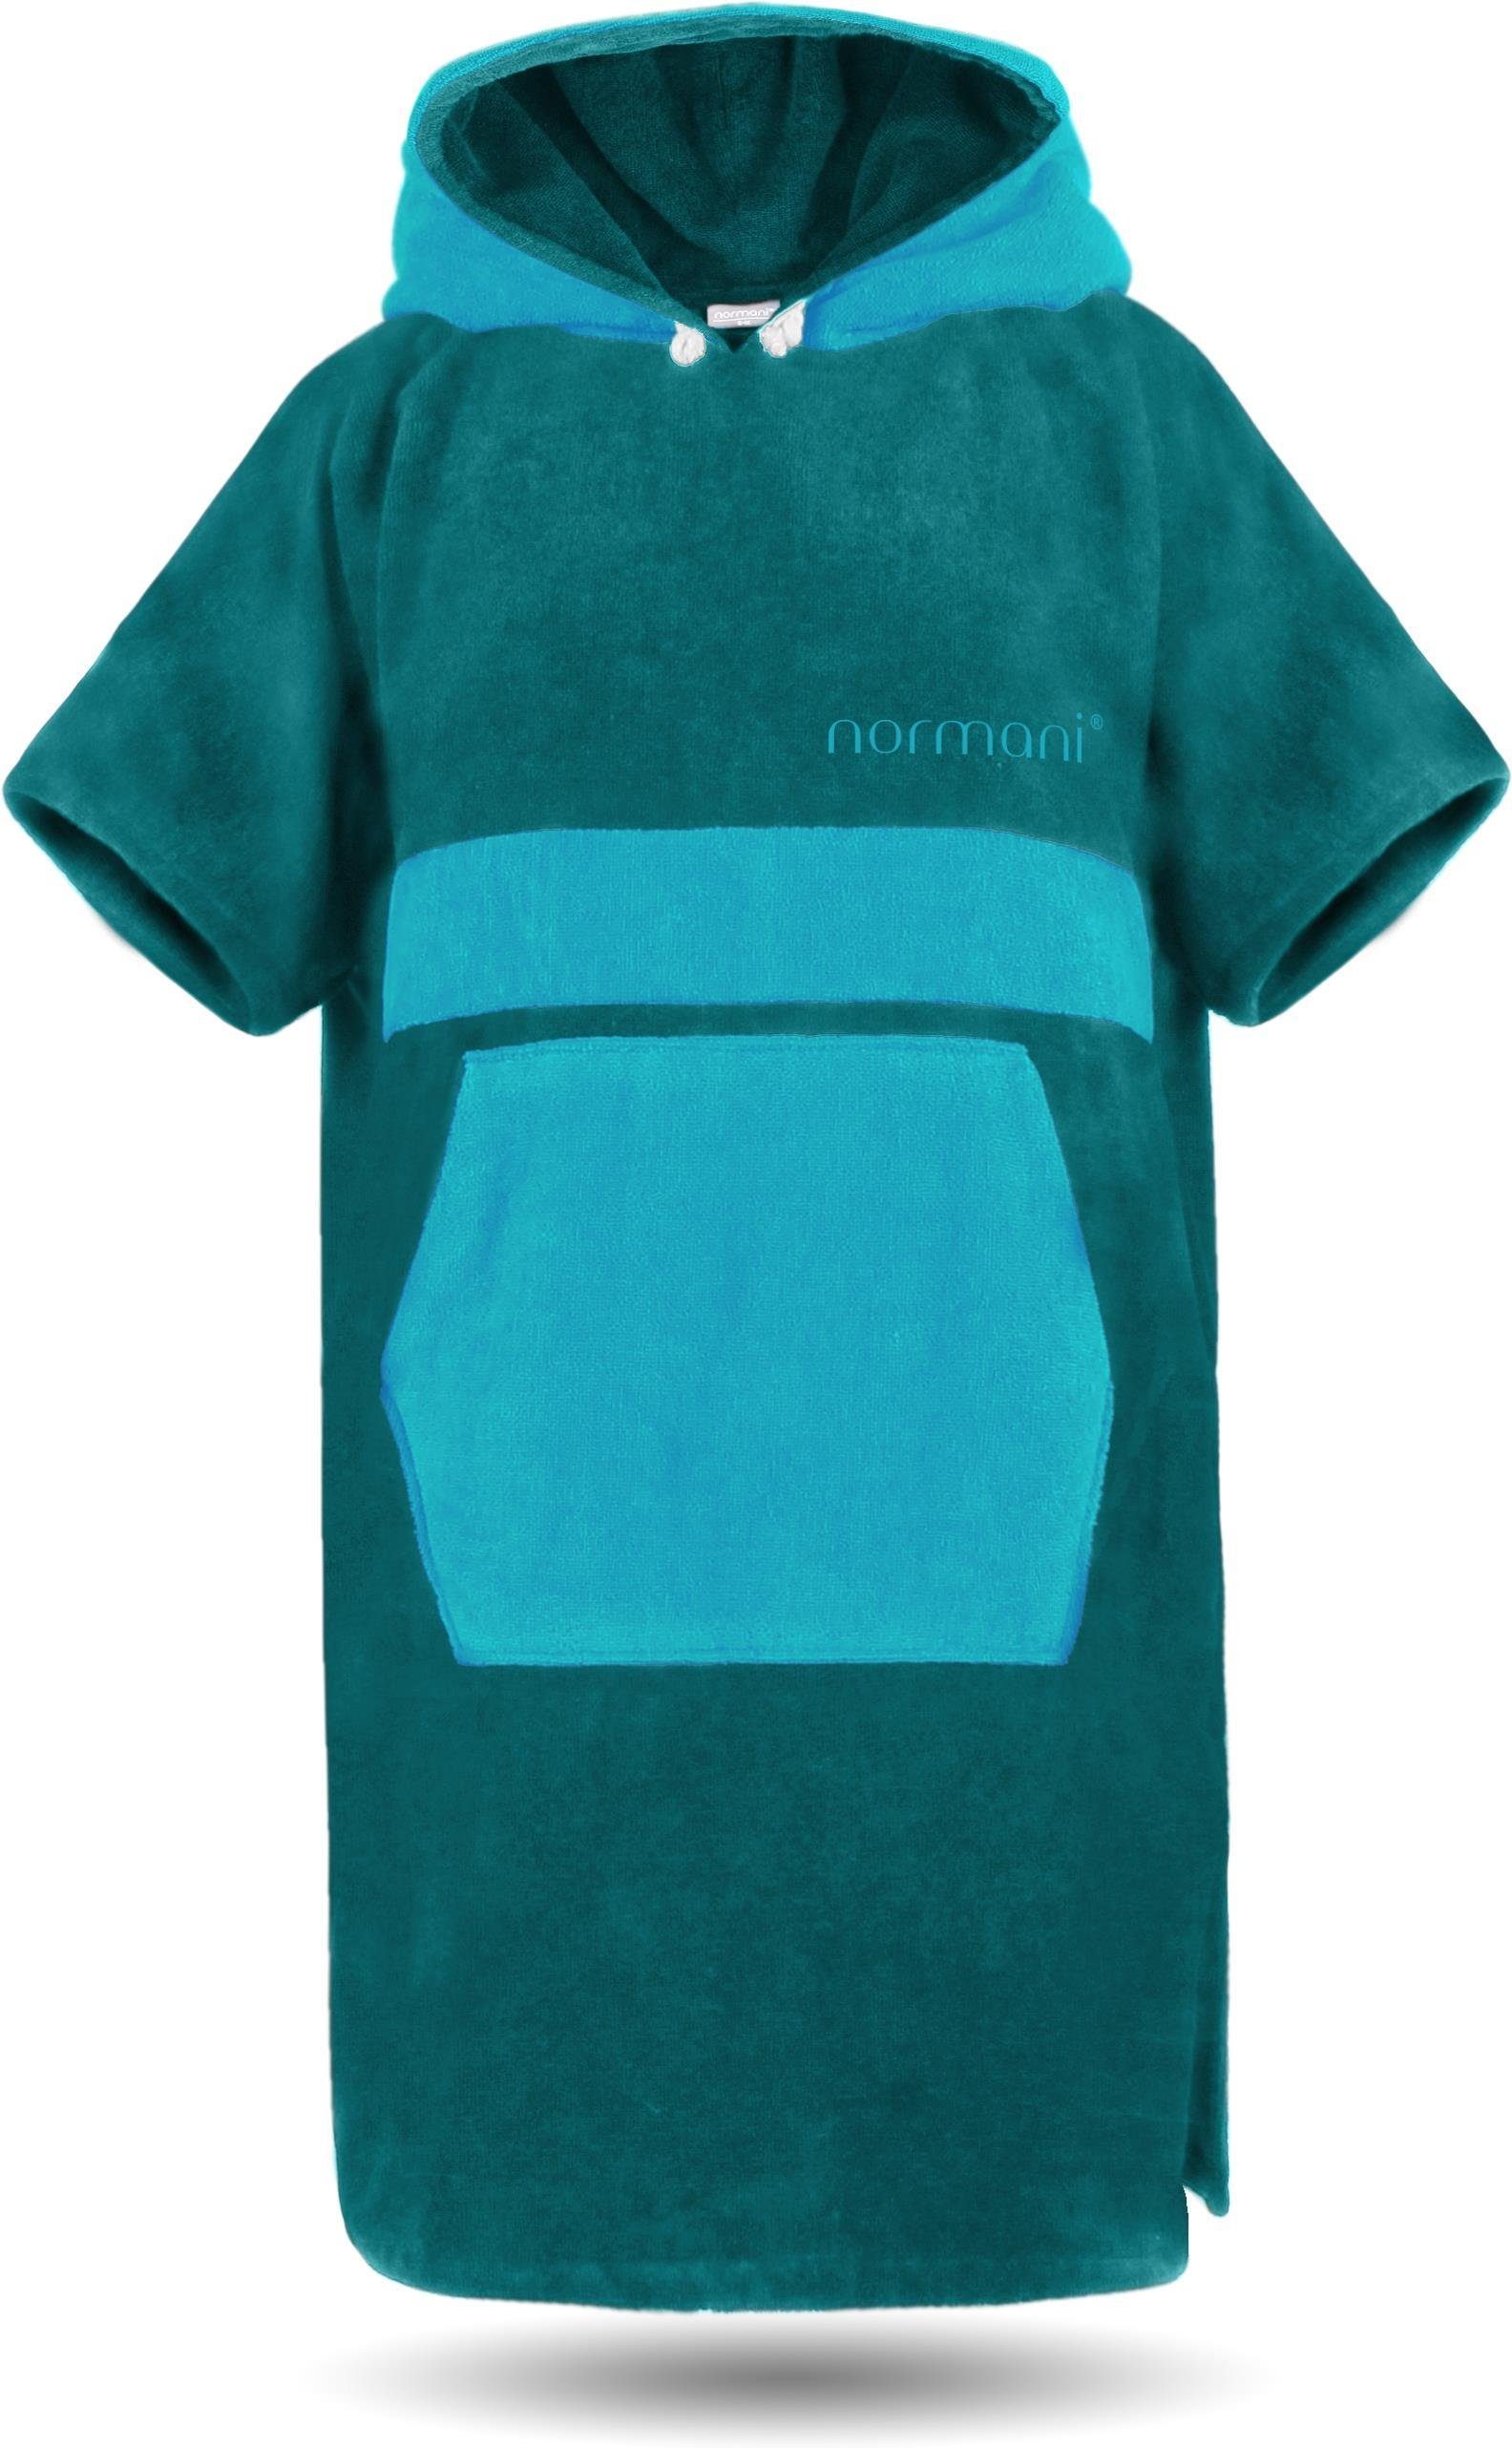 Umzieh-Hilfe Strand-Bademantel für Damen und Herren aus 100% Baumwoll normani Unisex Handtuch-Poncho 